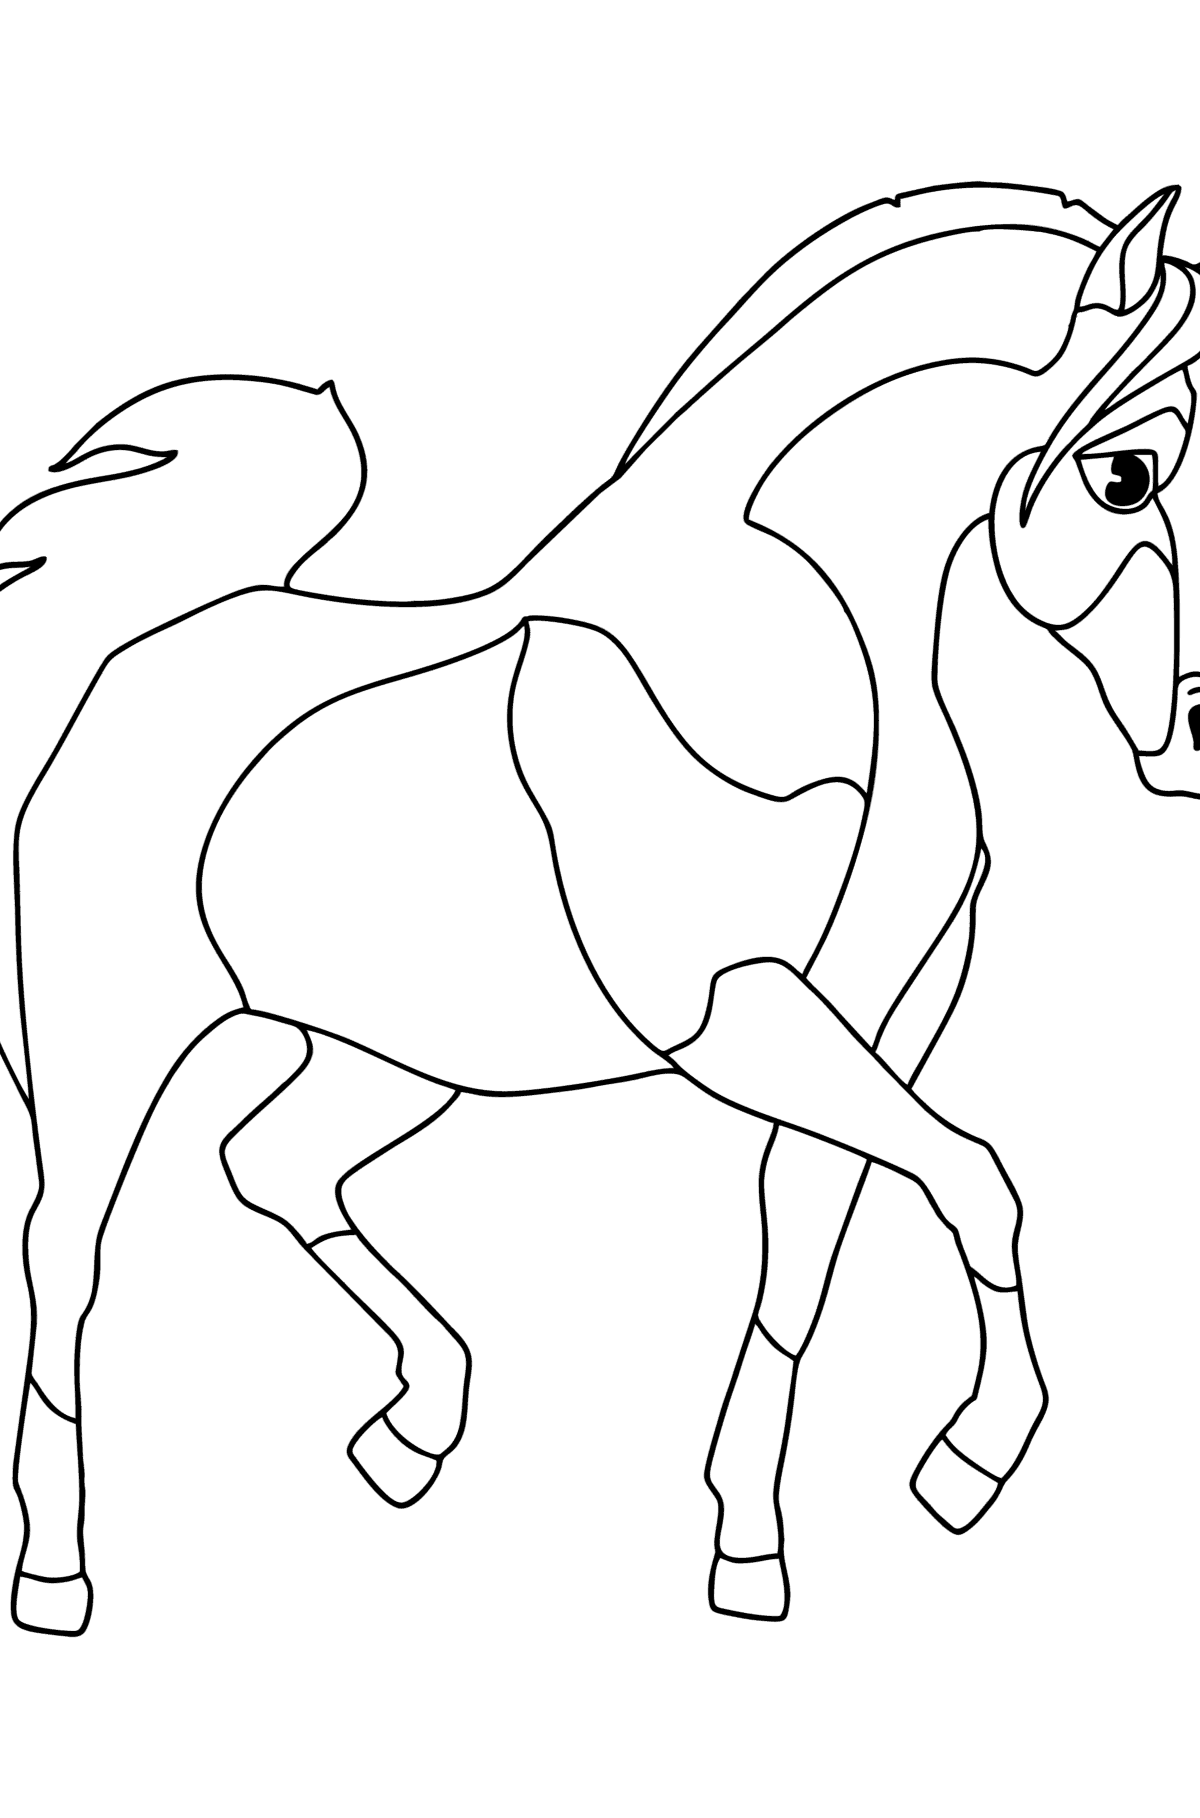 Tegning til fargelegging Arabisk hest - Tegninger til fargelegging for barn